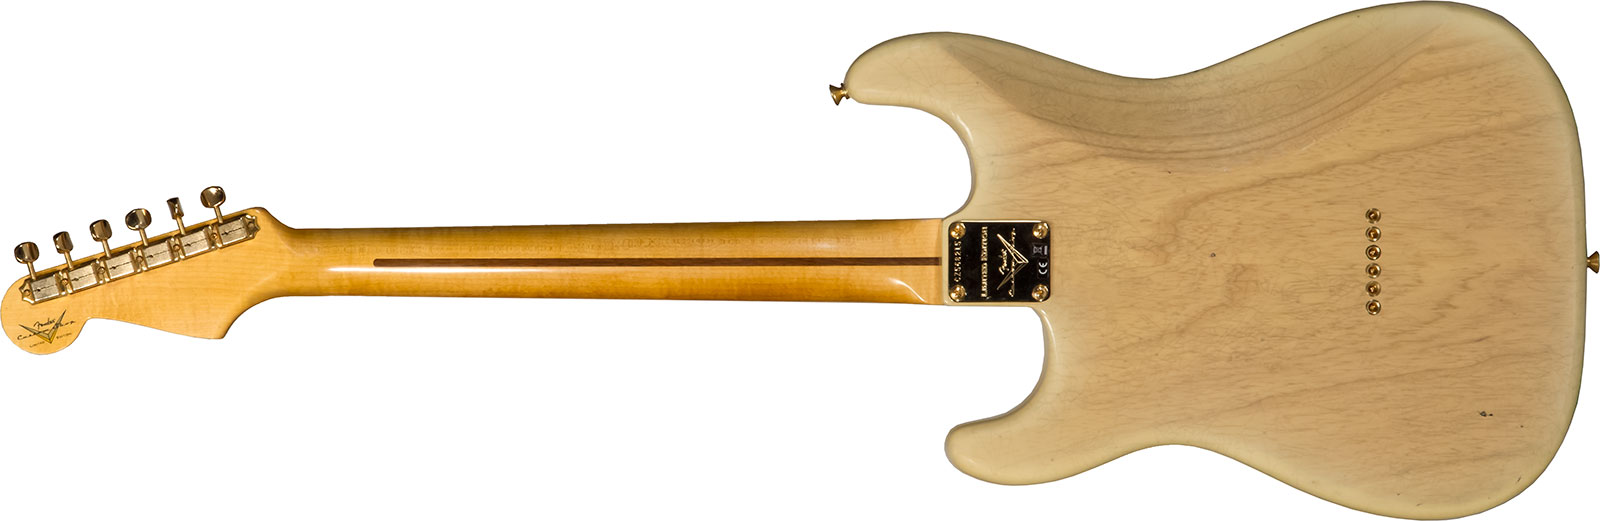 Fender Custom Shop Strat 1955 Hardtail Gold Hardware 3s Trem Mn #cz568215 - Journeyman Relic Natural Blonde - E-Gitarre in Str-Form - Variation 1